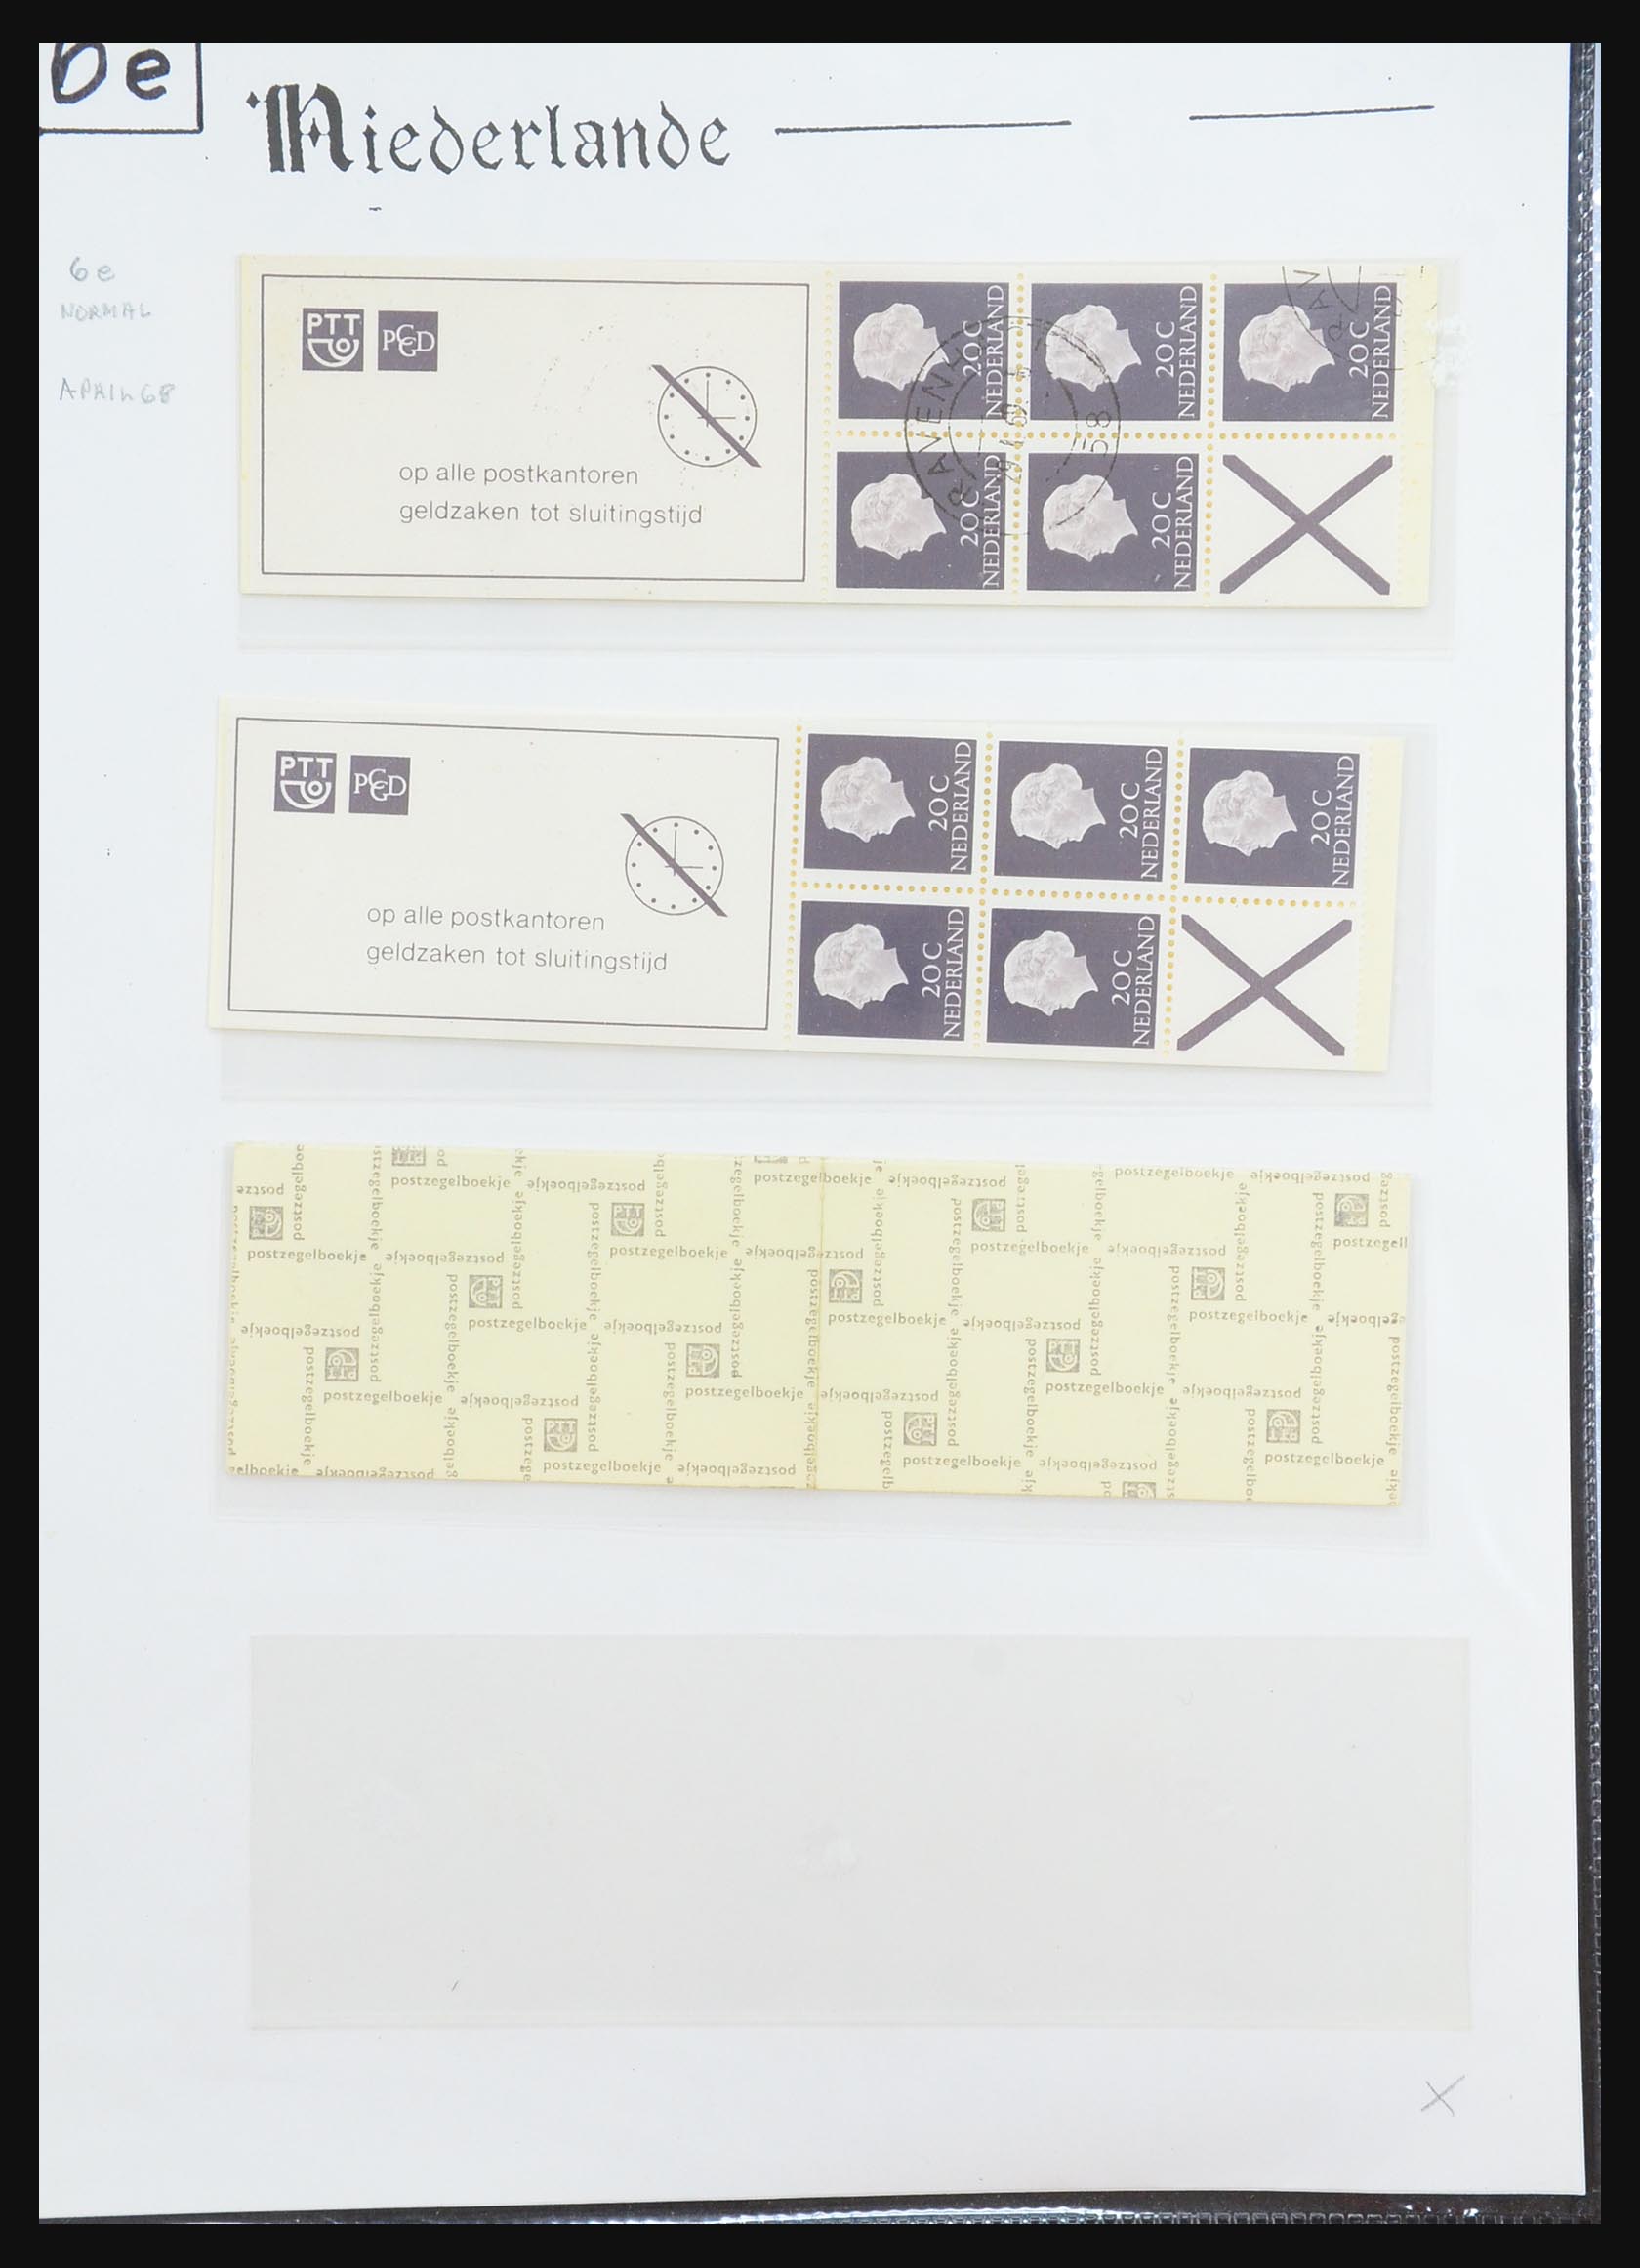 31311 014 - 31311 Netherlands stamp booklets 1964-1994.